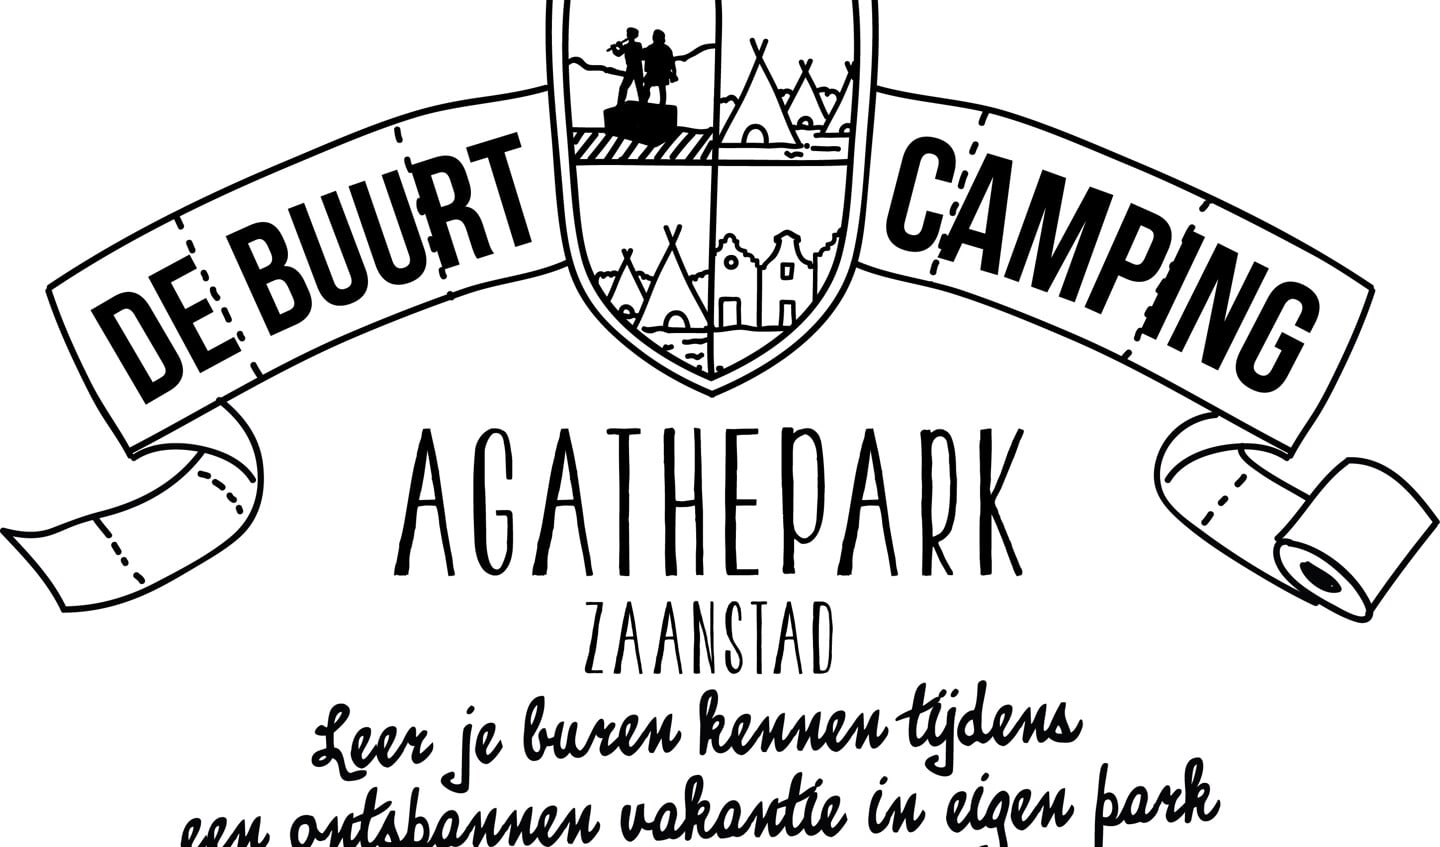 Kom kamperen op een van De Buurtcampings van Zaanstad. (Foto: De Buurtcamping)